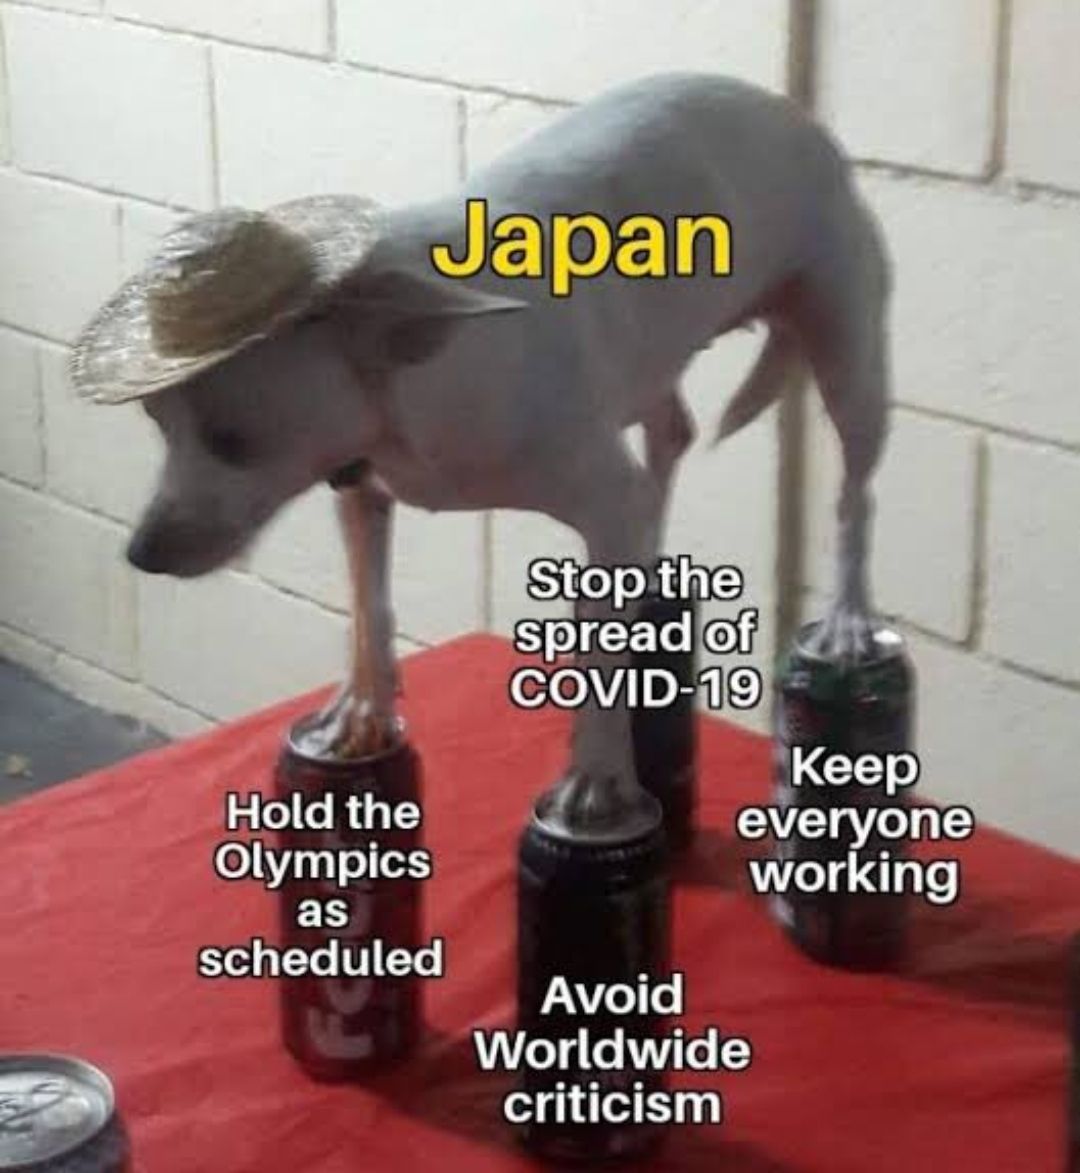 Japan deserves love